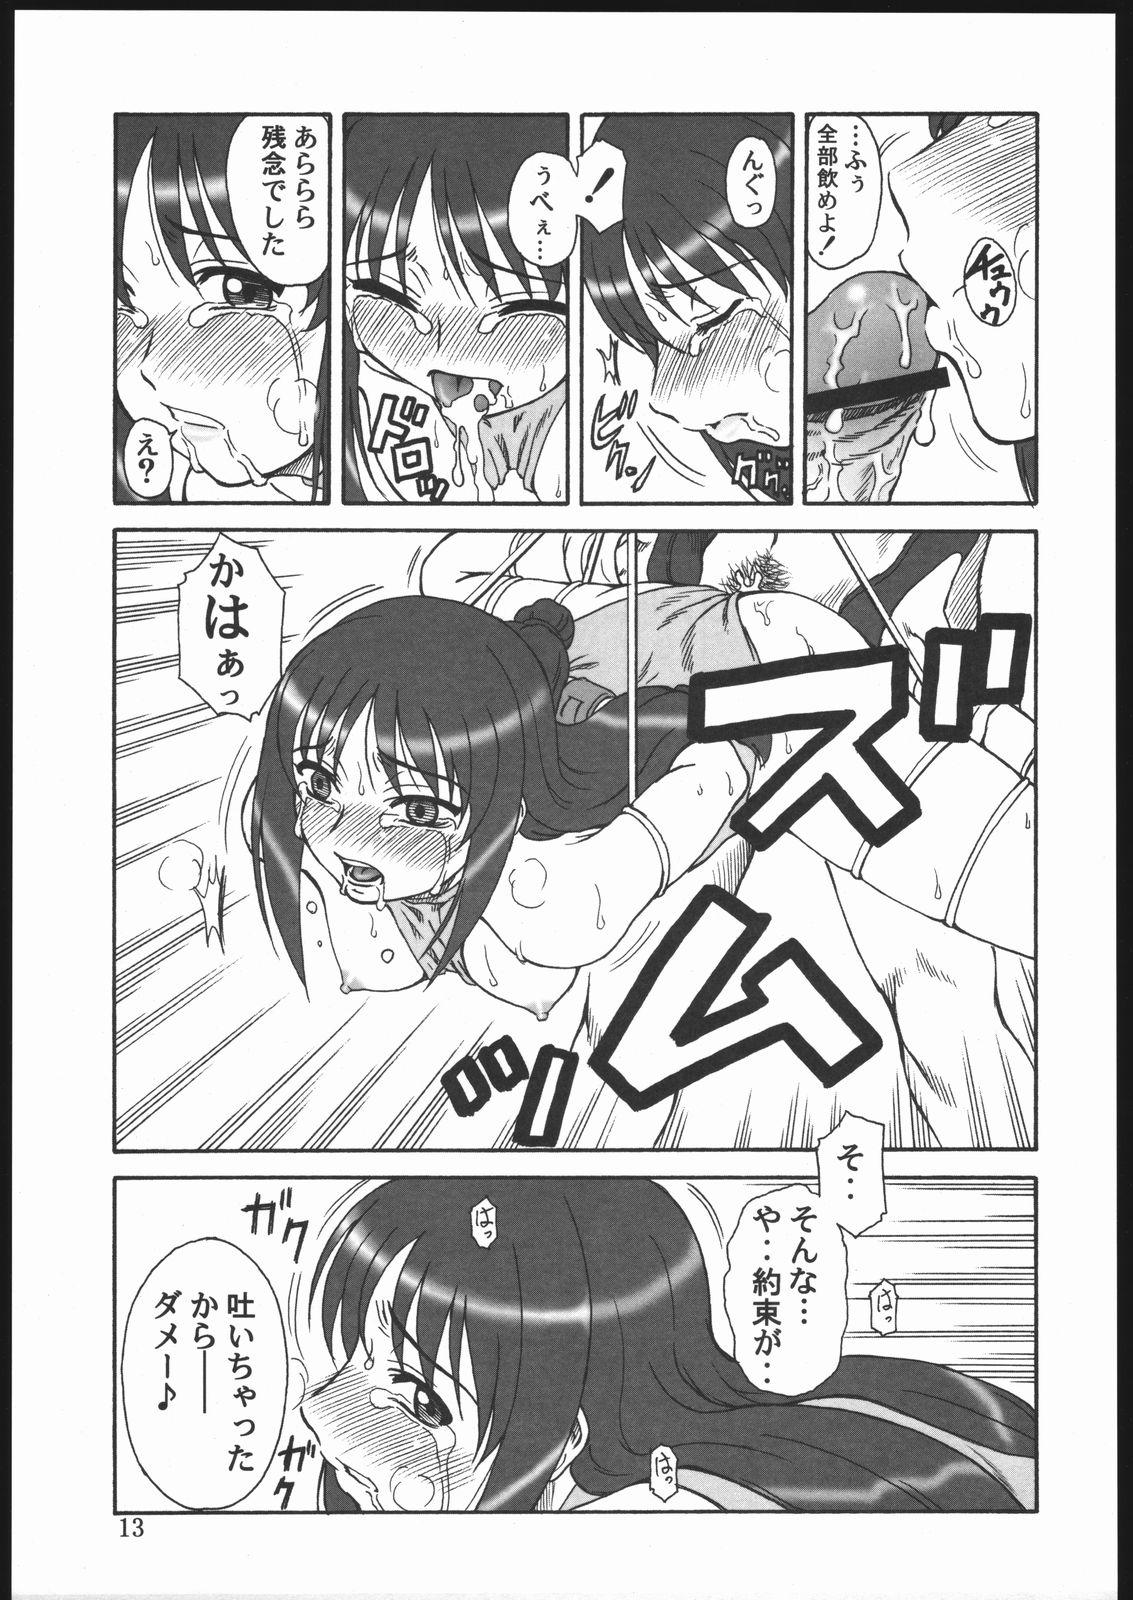 Fucked Gyokusai Kakugo 6 Kamikaze Attack!! - Kaleido star Domina - Page 12